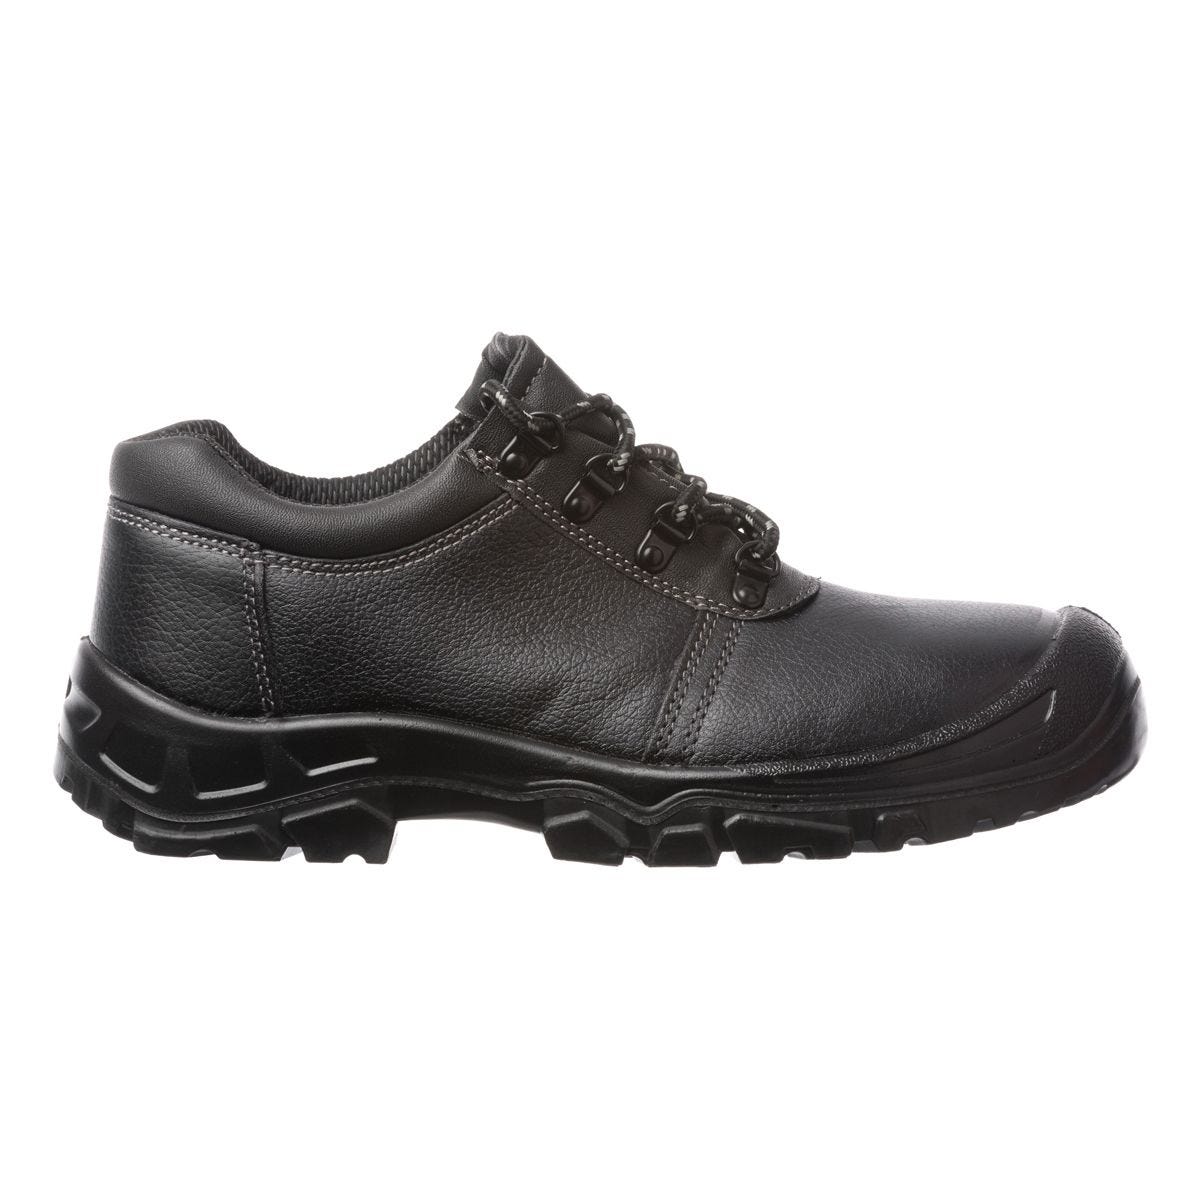 Chaussures de sécurité basses Azurite II S3 ESD noir - Coverguard - Taille 44 0